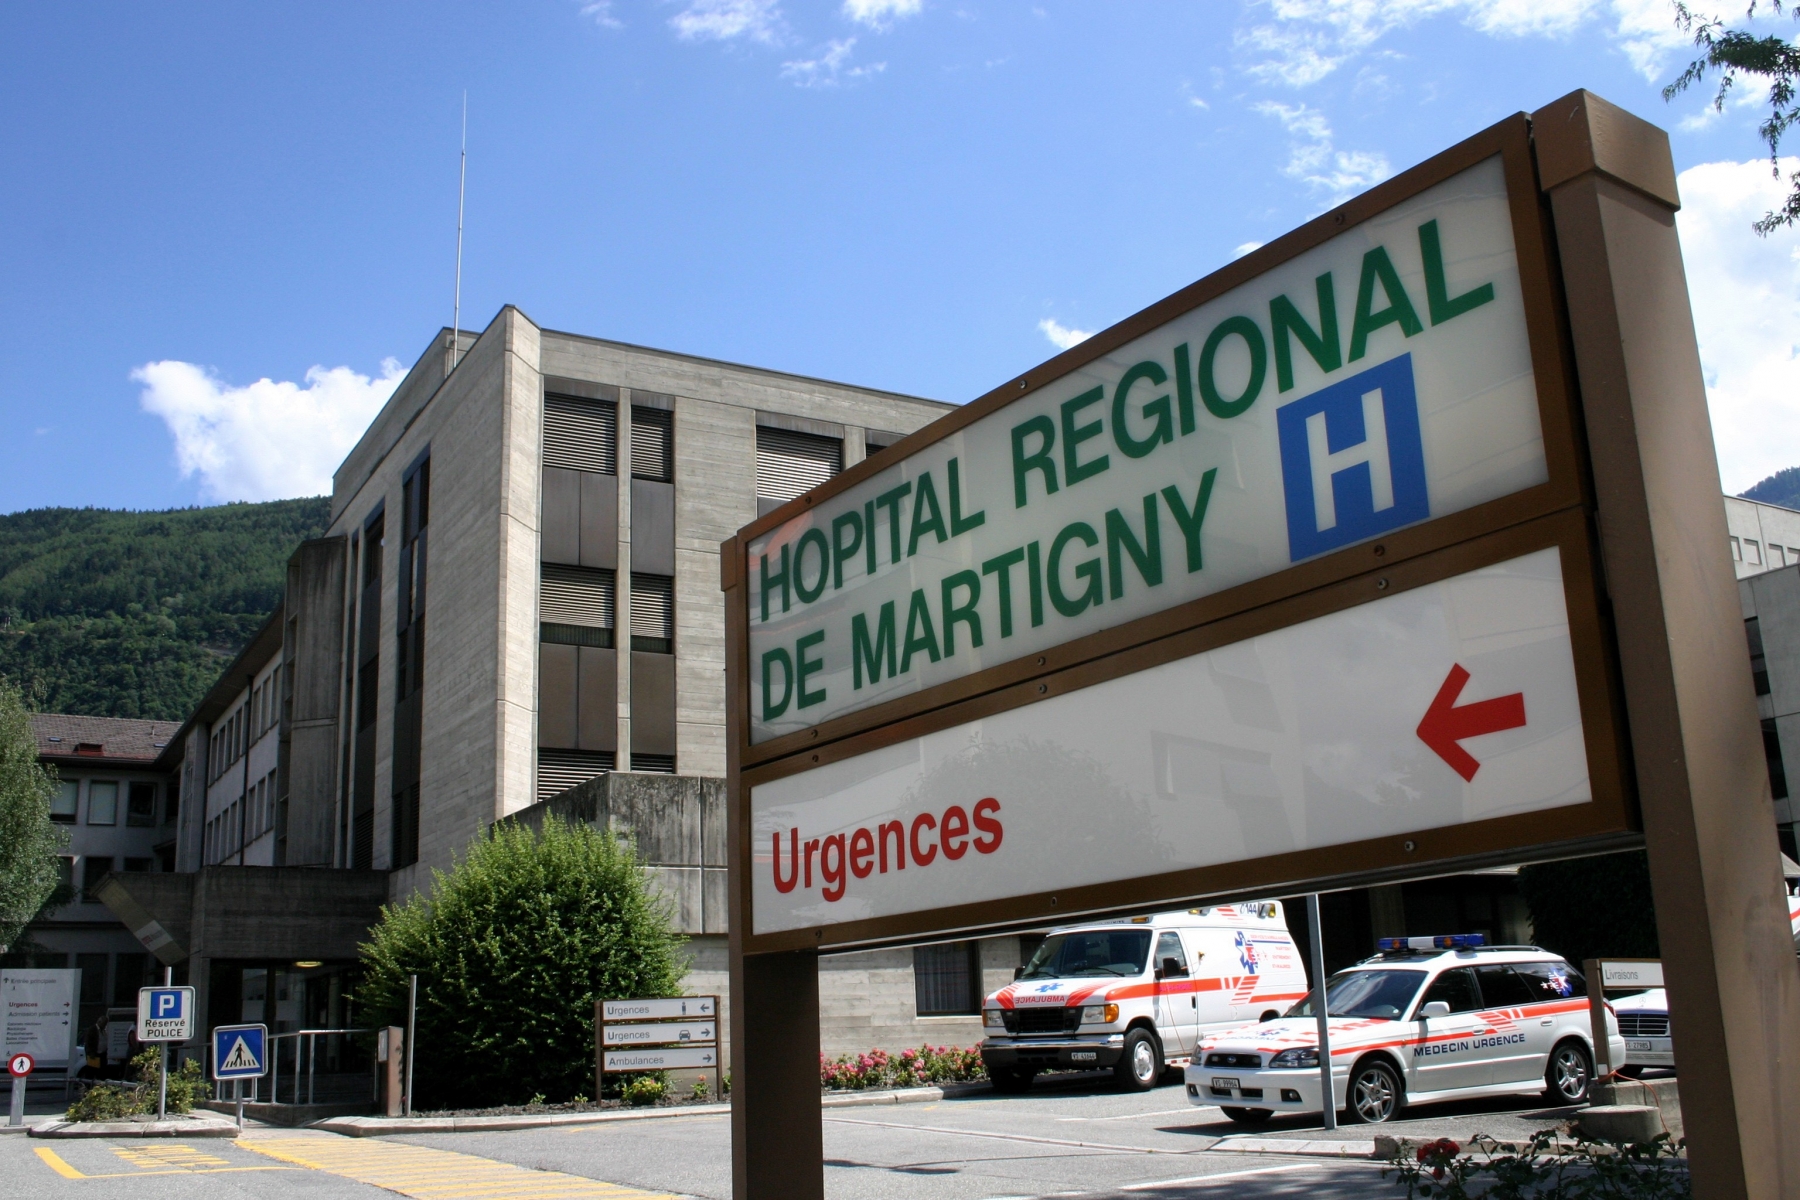 C'est à l'hôpital de Martigny que le coloscope comportant des microbes a été trouvé.